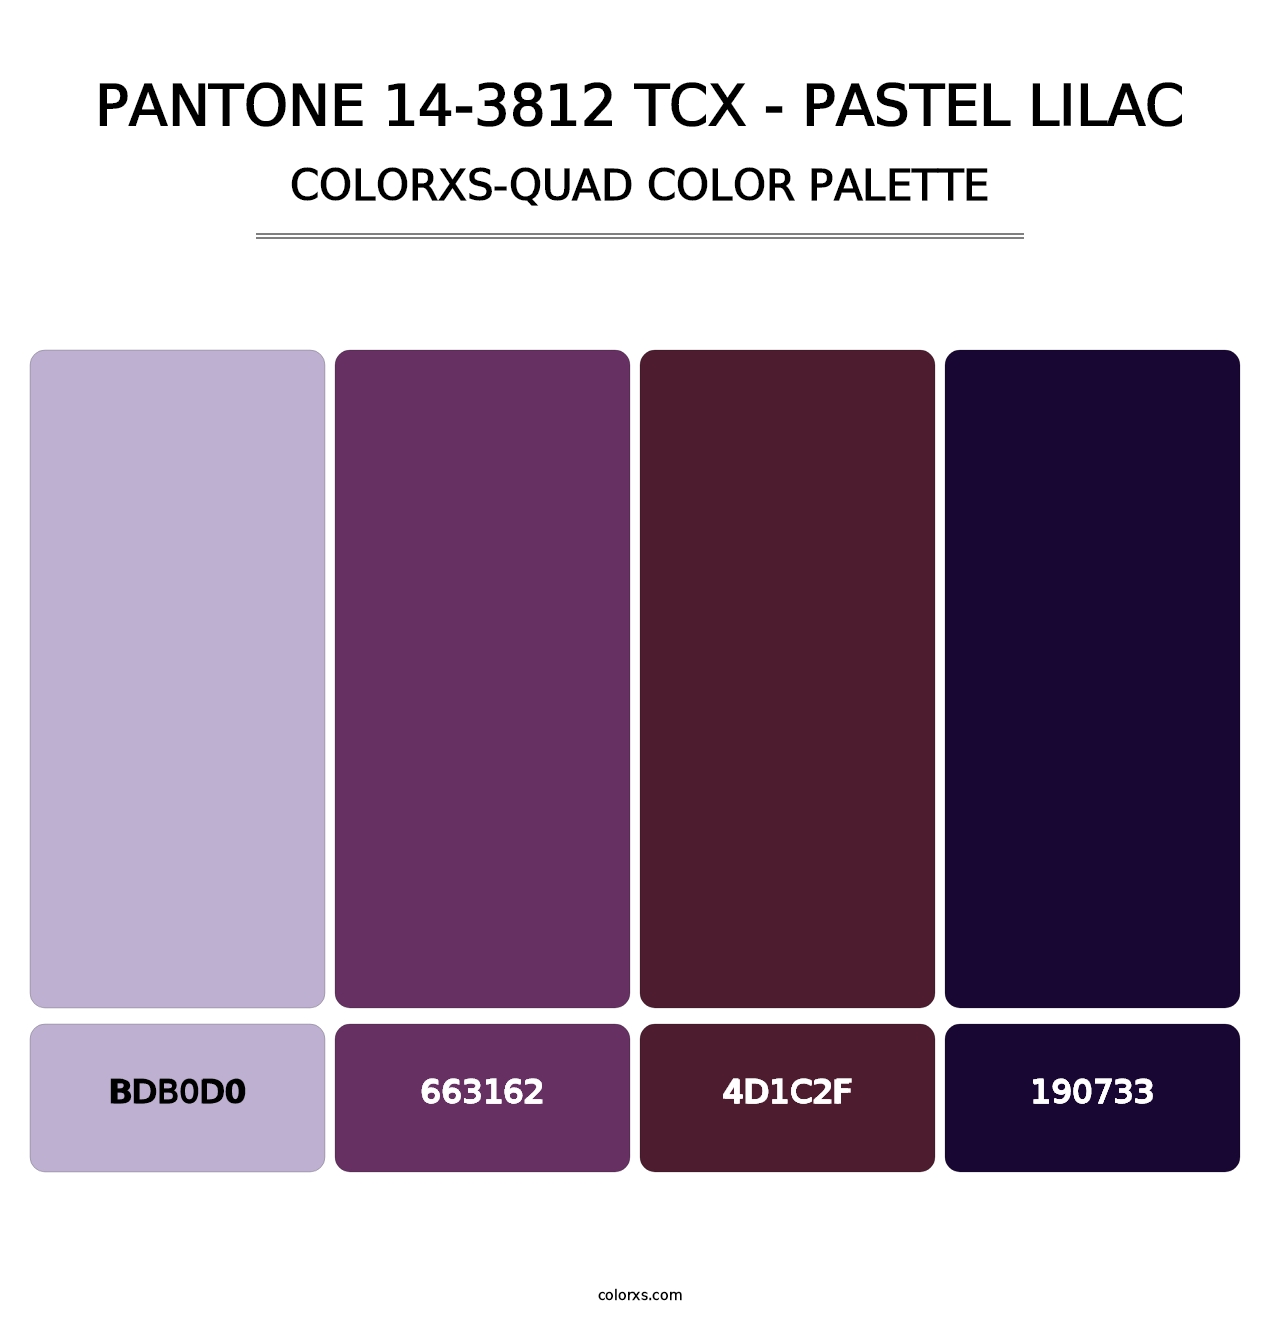 PANTONE 14-3812 TCX - Pastel Lilac - Colorxs Quad Palette